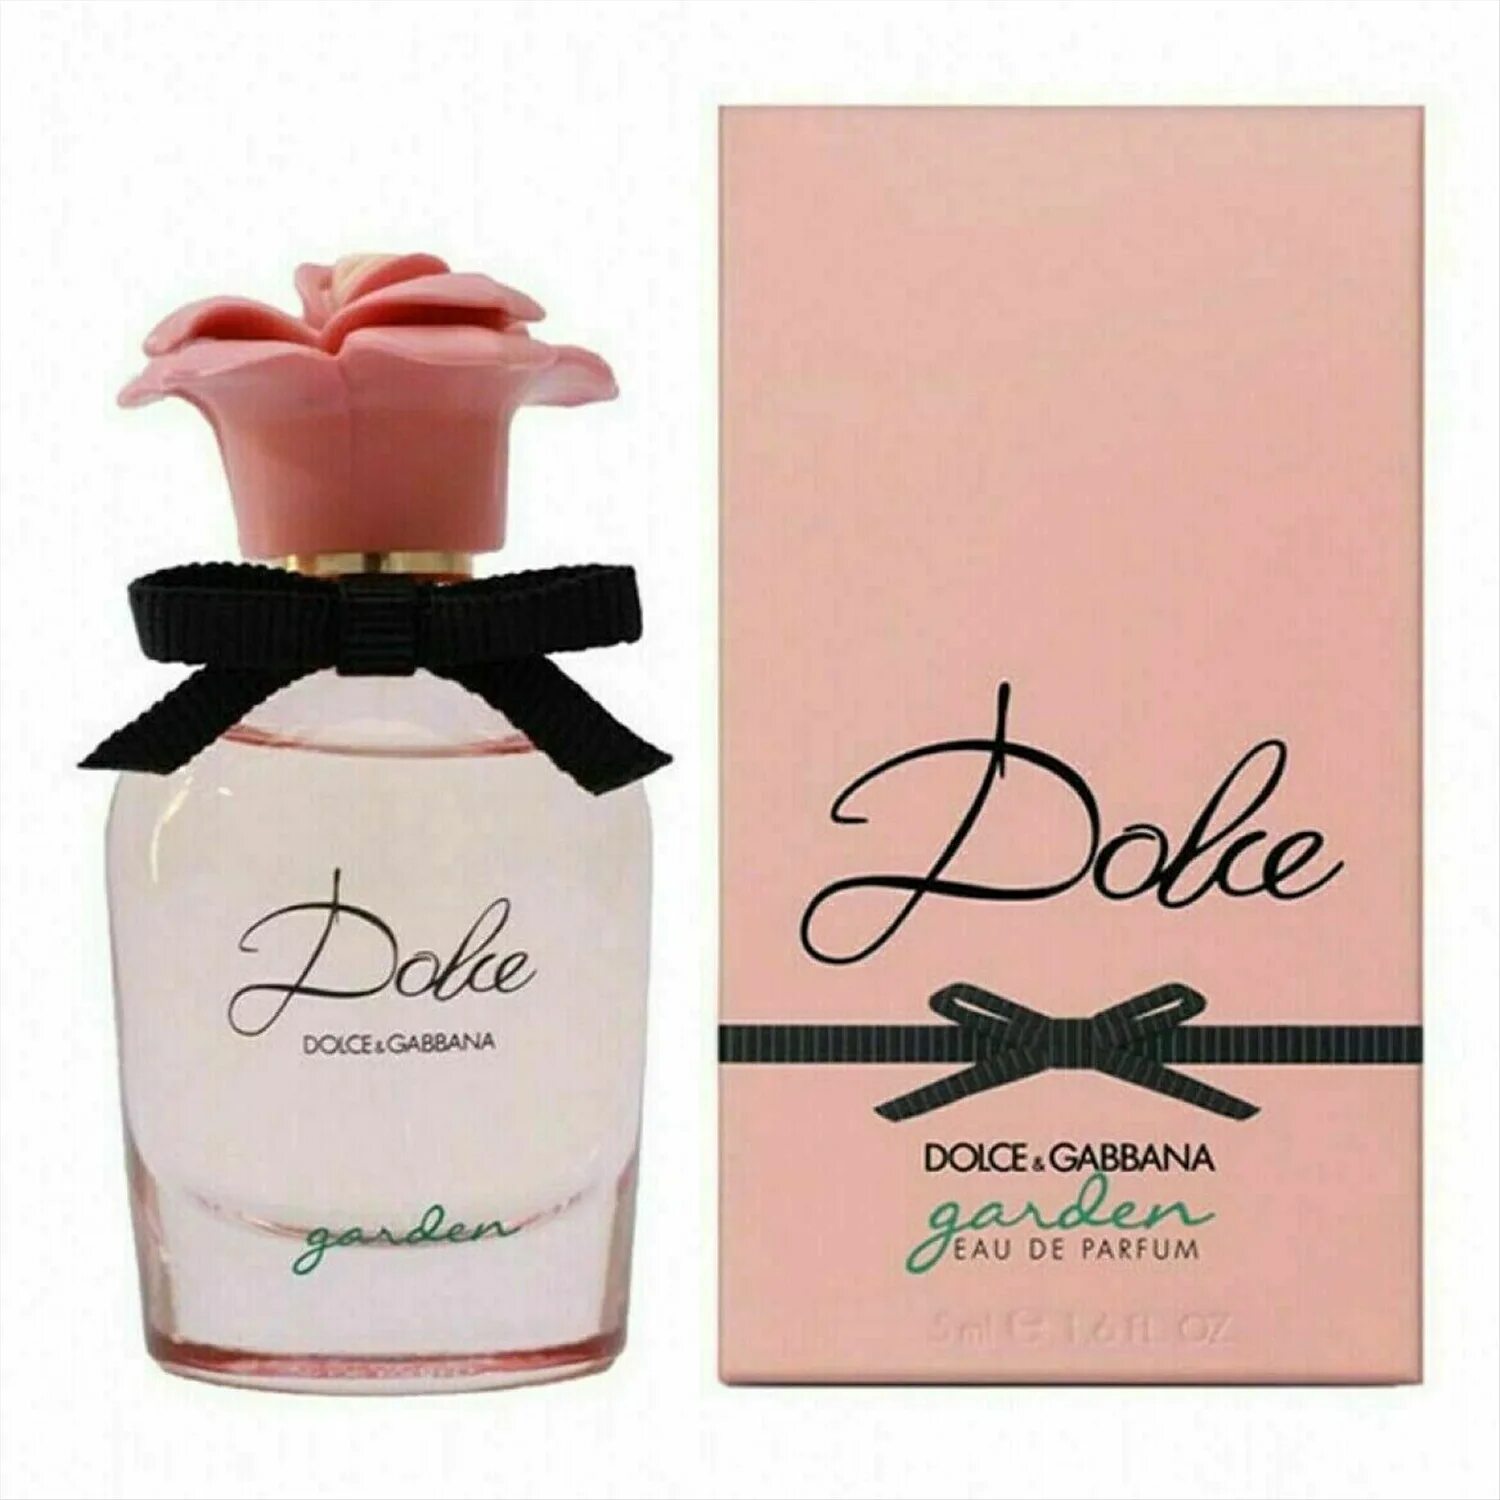 D&G Dolce Garden EDP 75ml. Dolce&Gabbana Dolce Garden 75. Dolce Gabbana Dolce Garden. Dolce Gabbana Dolce Lady 30ml EDP.